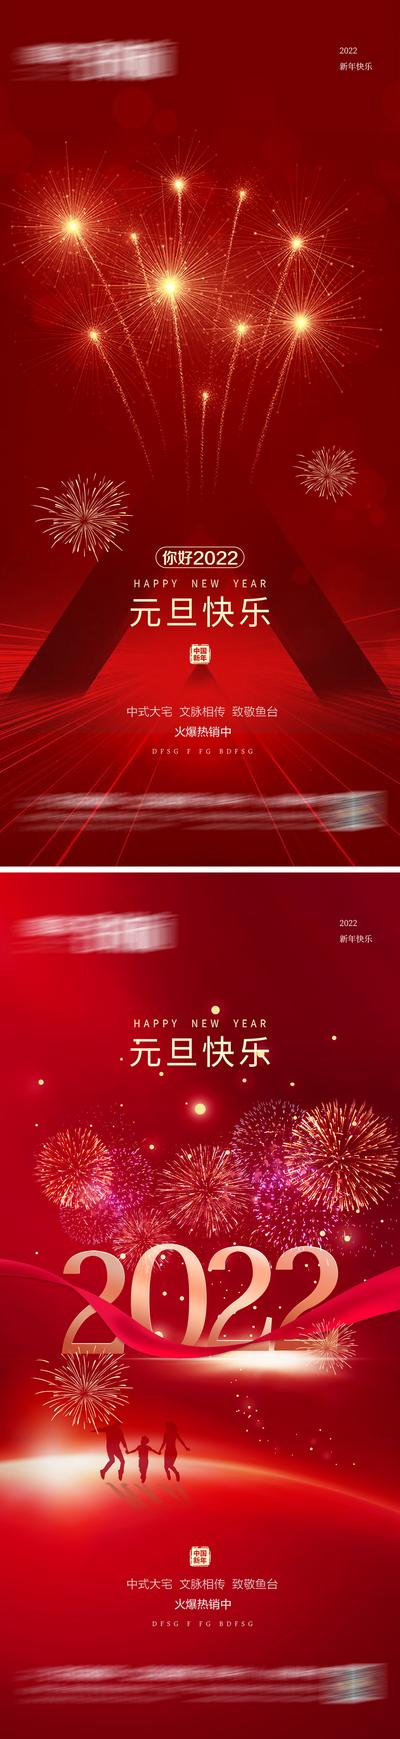 南门网 海报 地产 公历节日  元旦 虎年 2022 新年 春节 喜庆 烟花